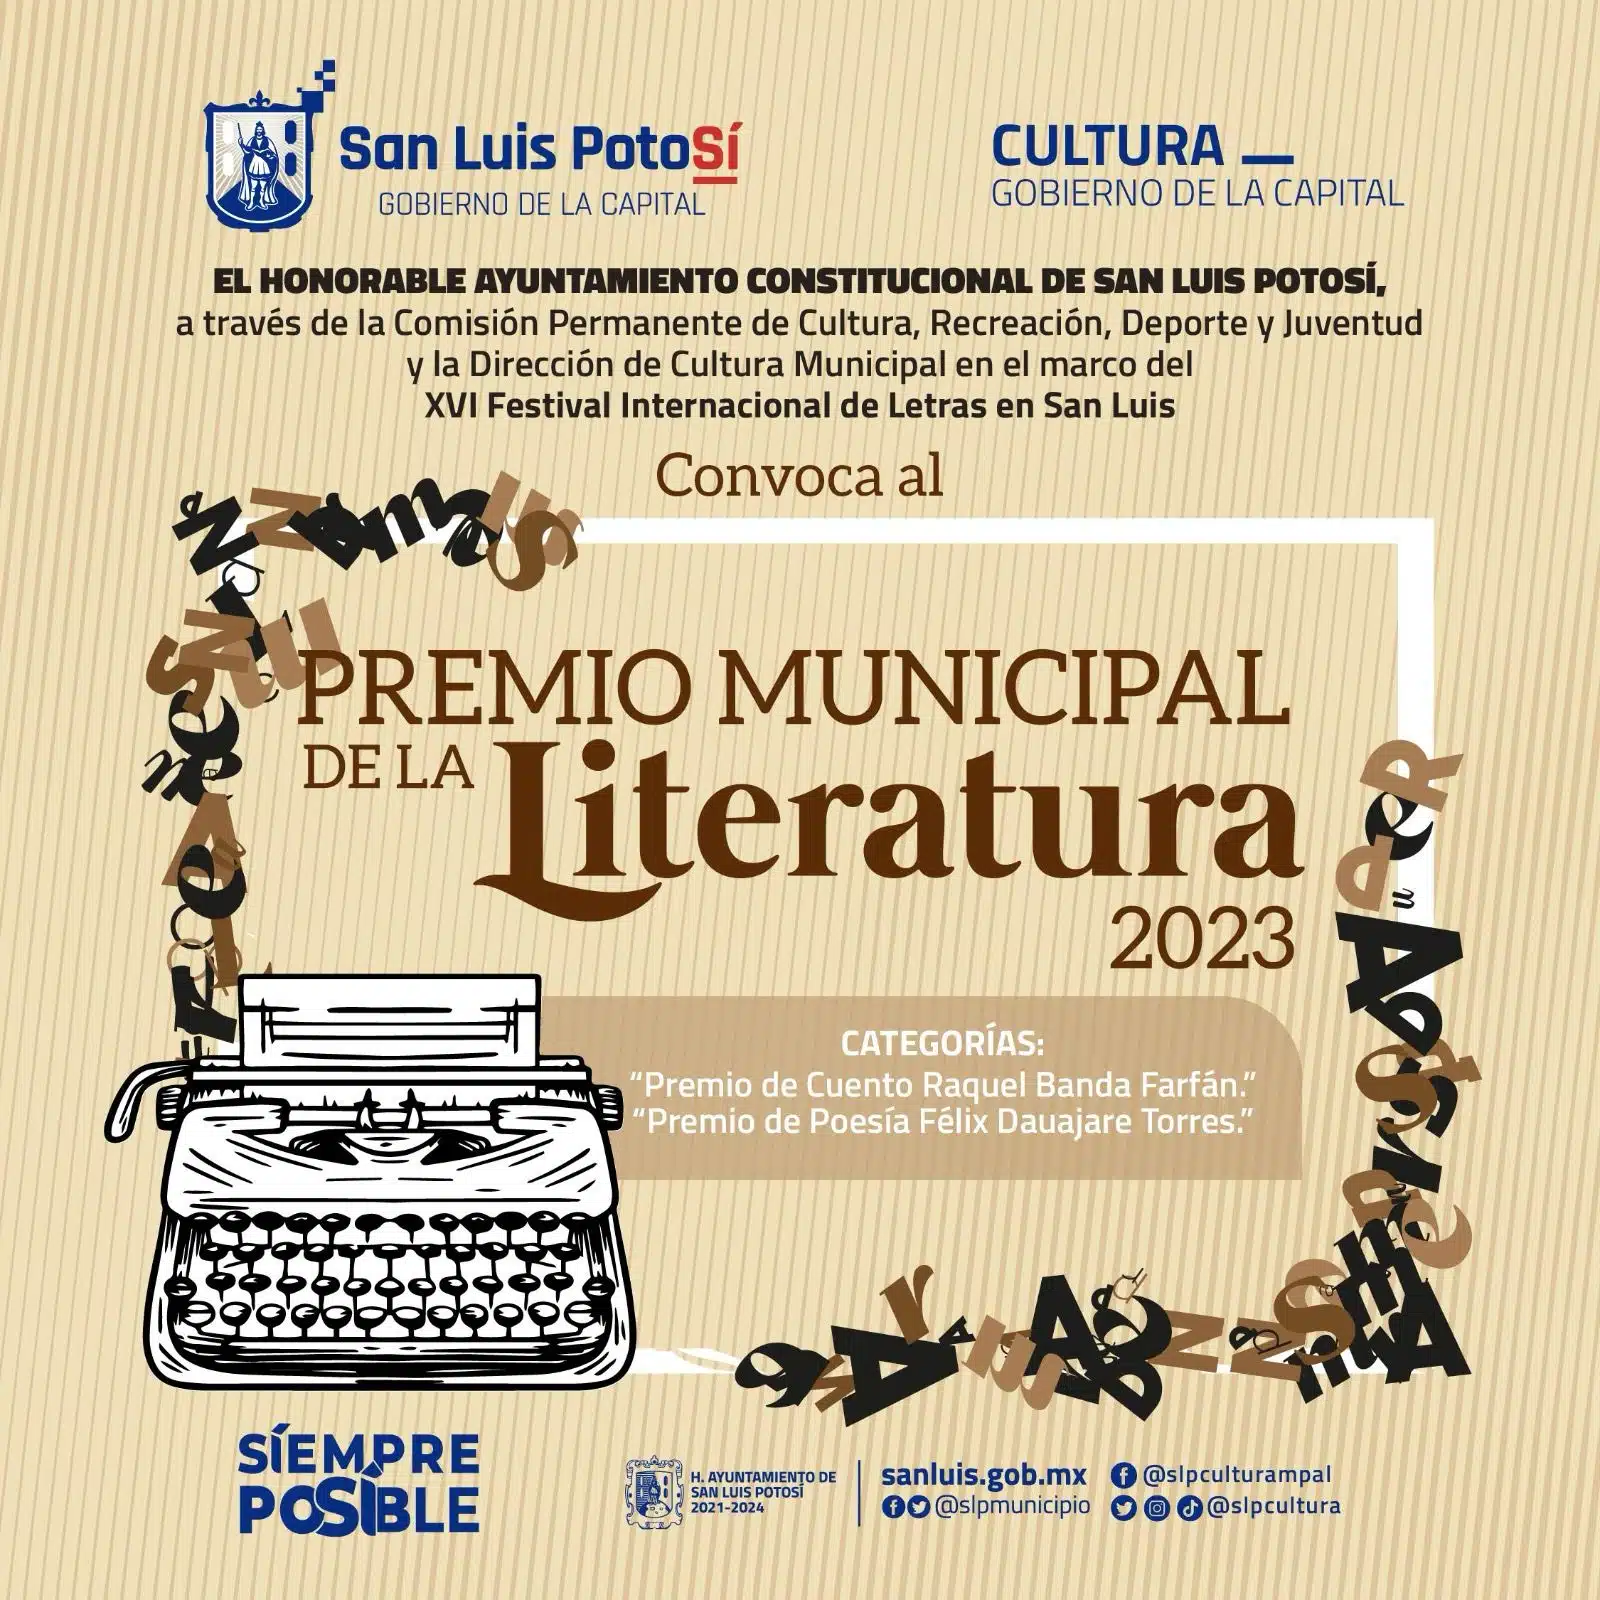 Cabildo invita a participar el Premio Municipal de Literatura 2023